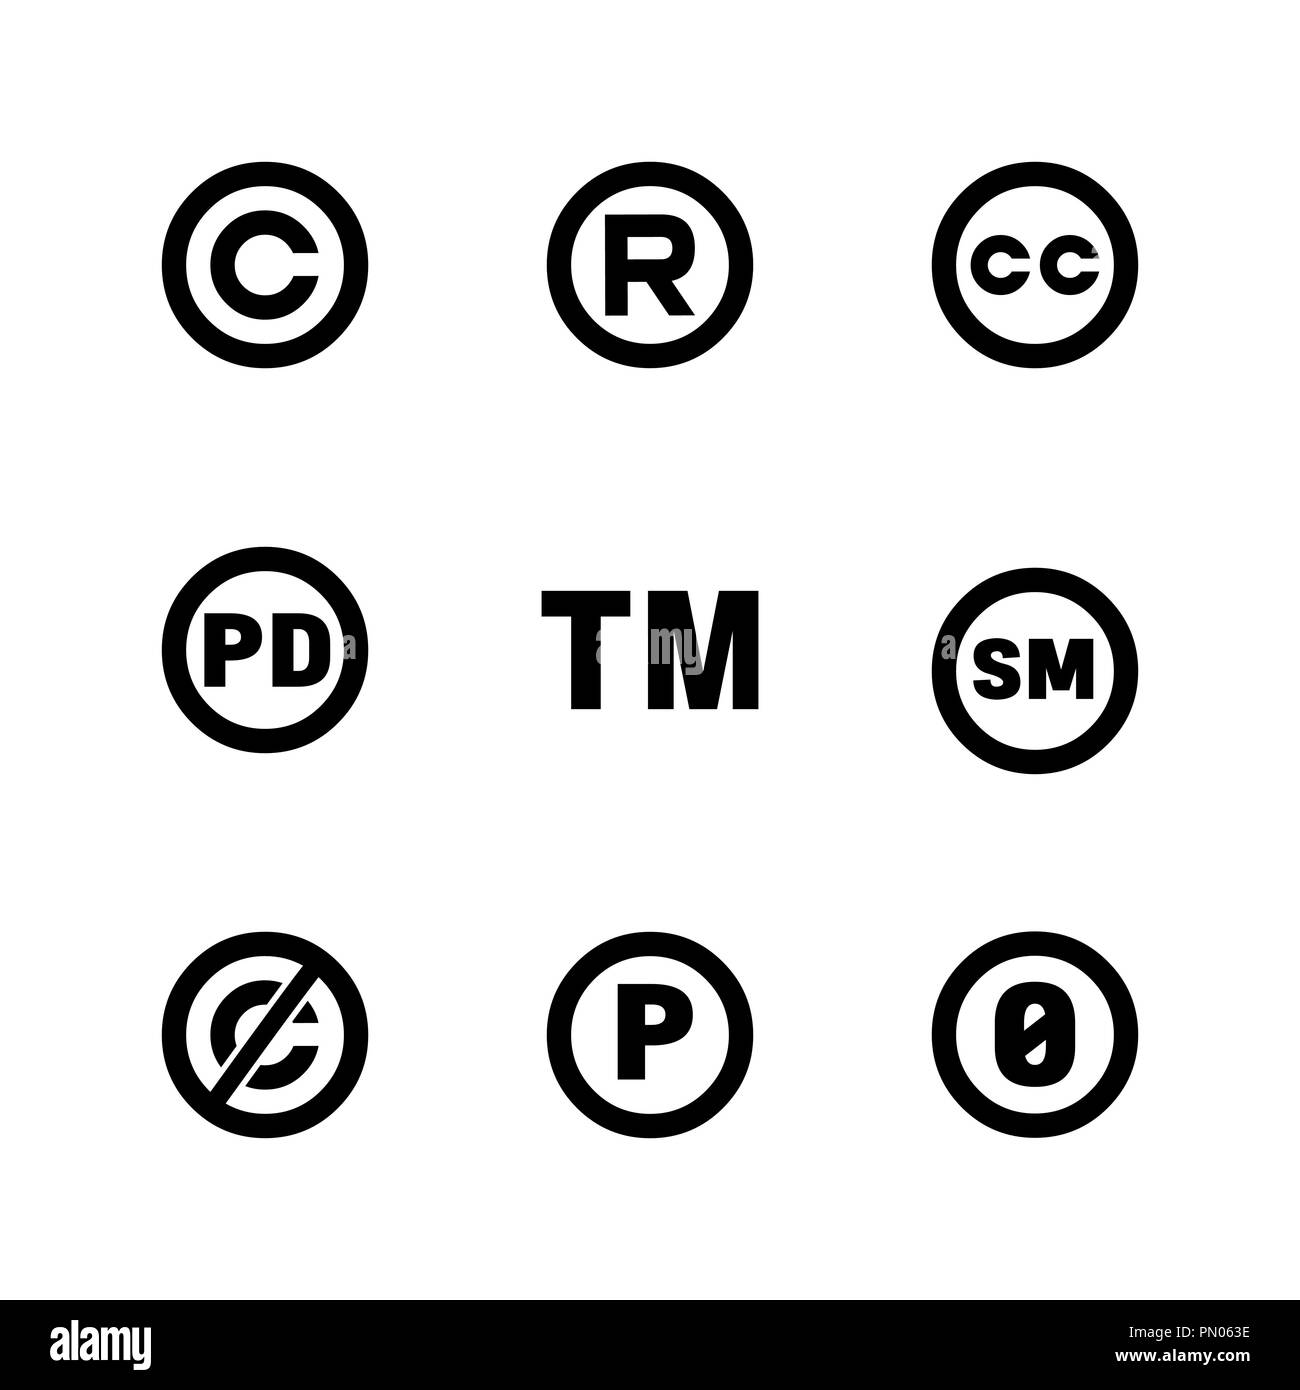 Geistiges Eigentum Symbole: Copyright, creative commons, Warenzeichen, public domain, Alle Rechte vorbehalten, Service, sounnd Aufnahme Stock Vektor